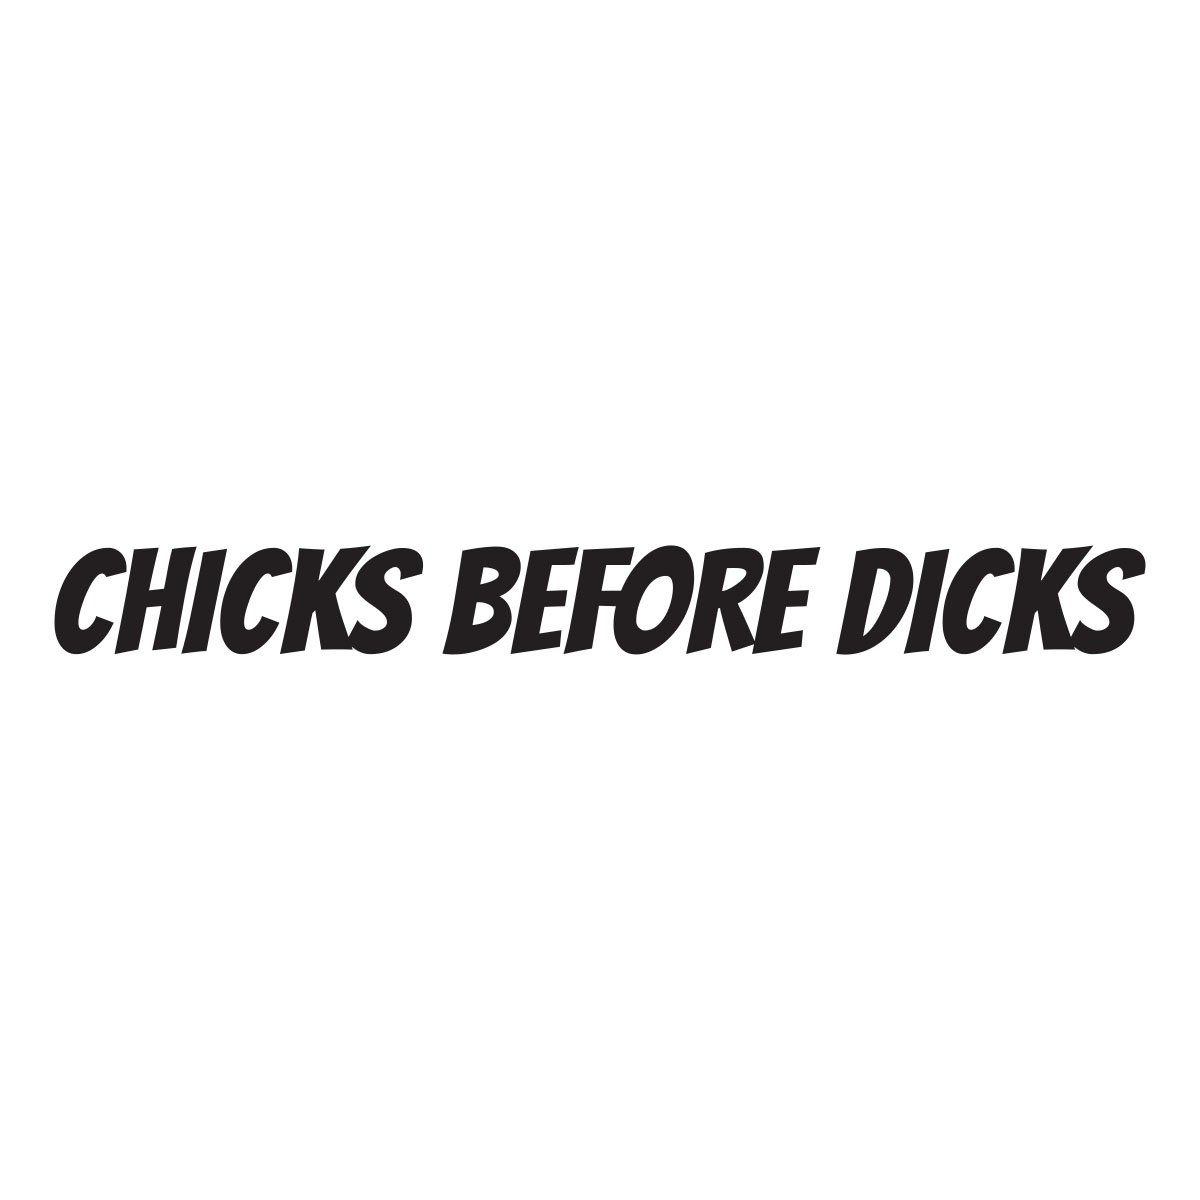 chicks before dicks